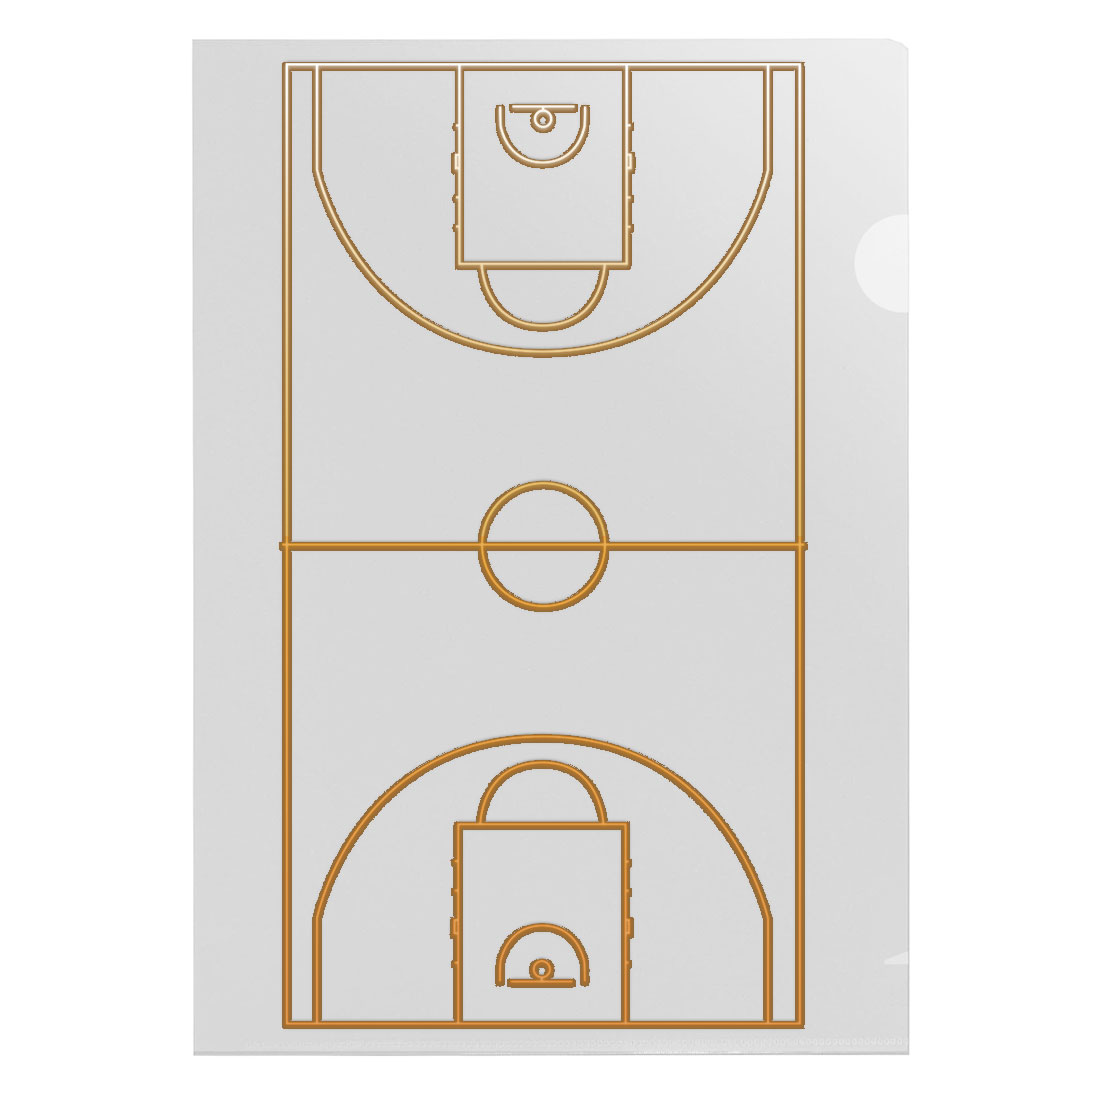 190426 – バスケットボールコート